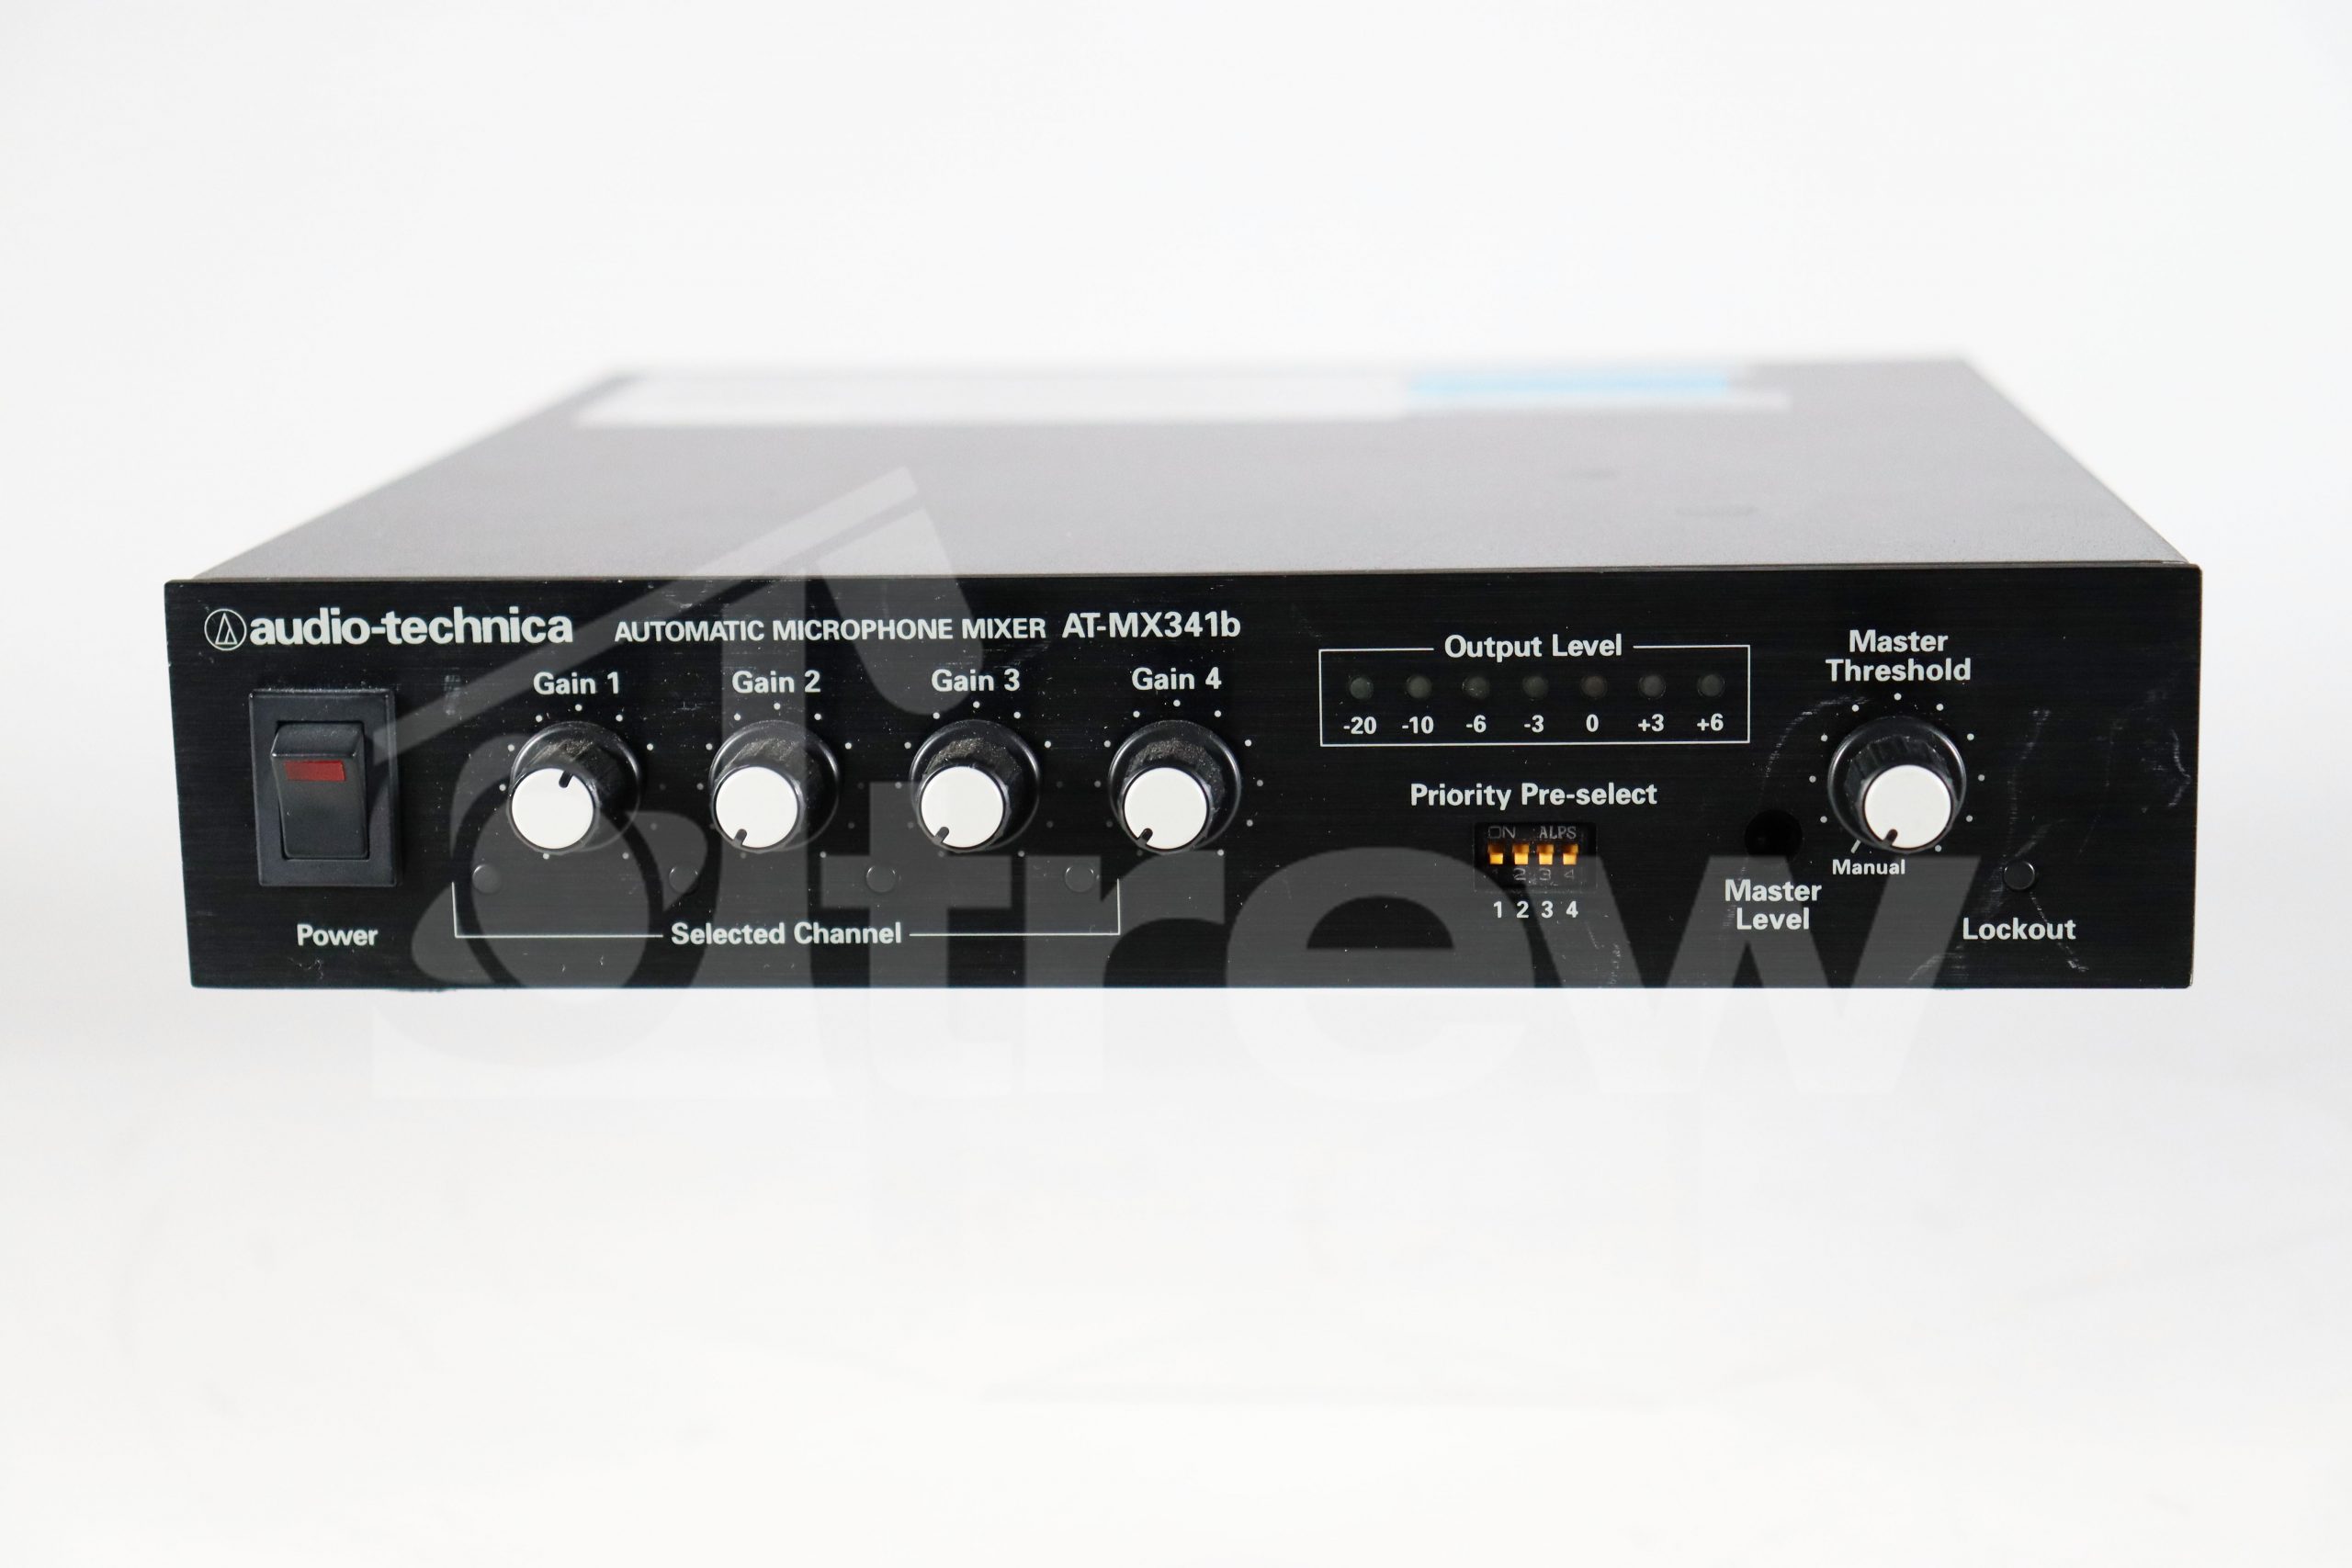 Audio Technica AT-MX341b SmartMixer Four-channel Automatic Mixer - Trew  Audio